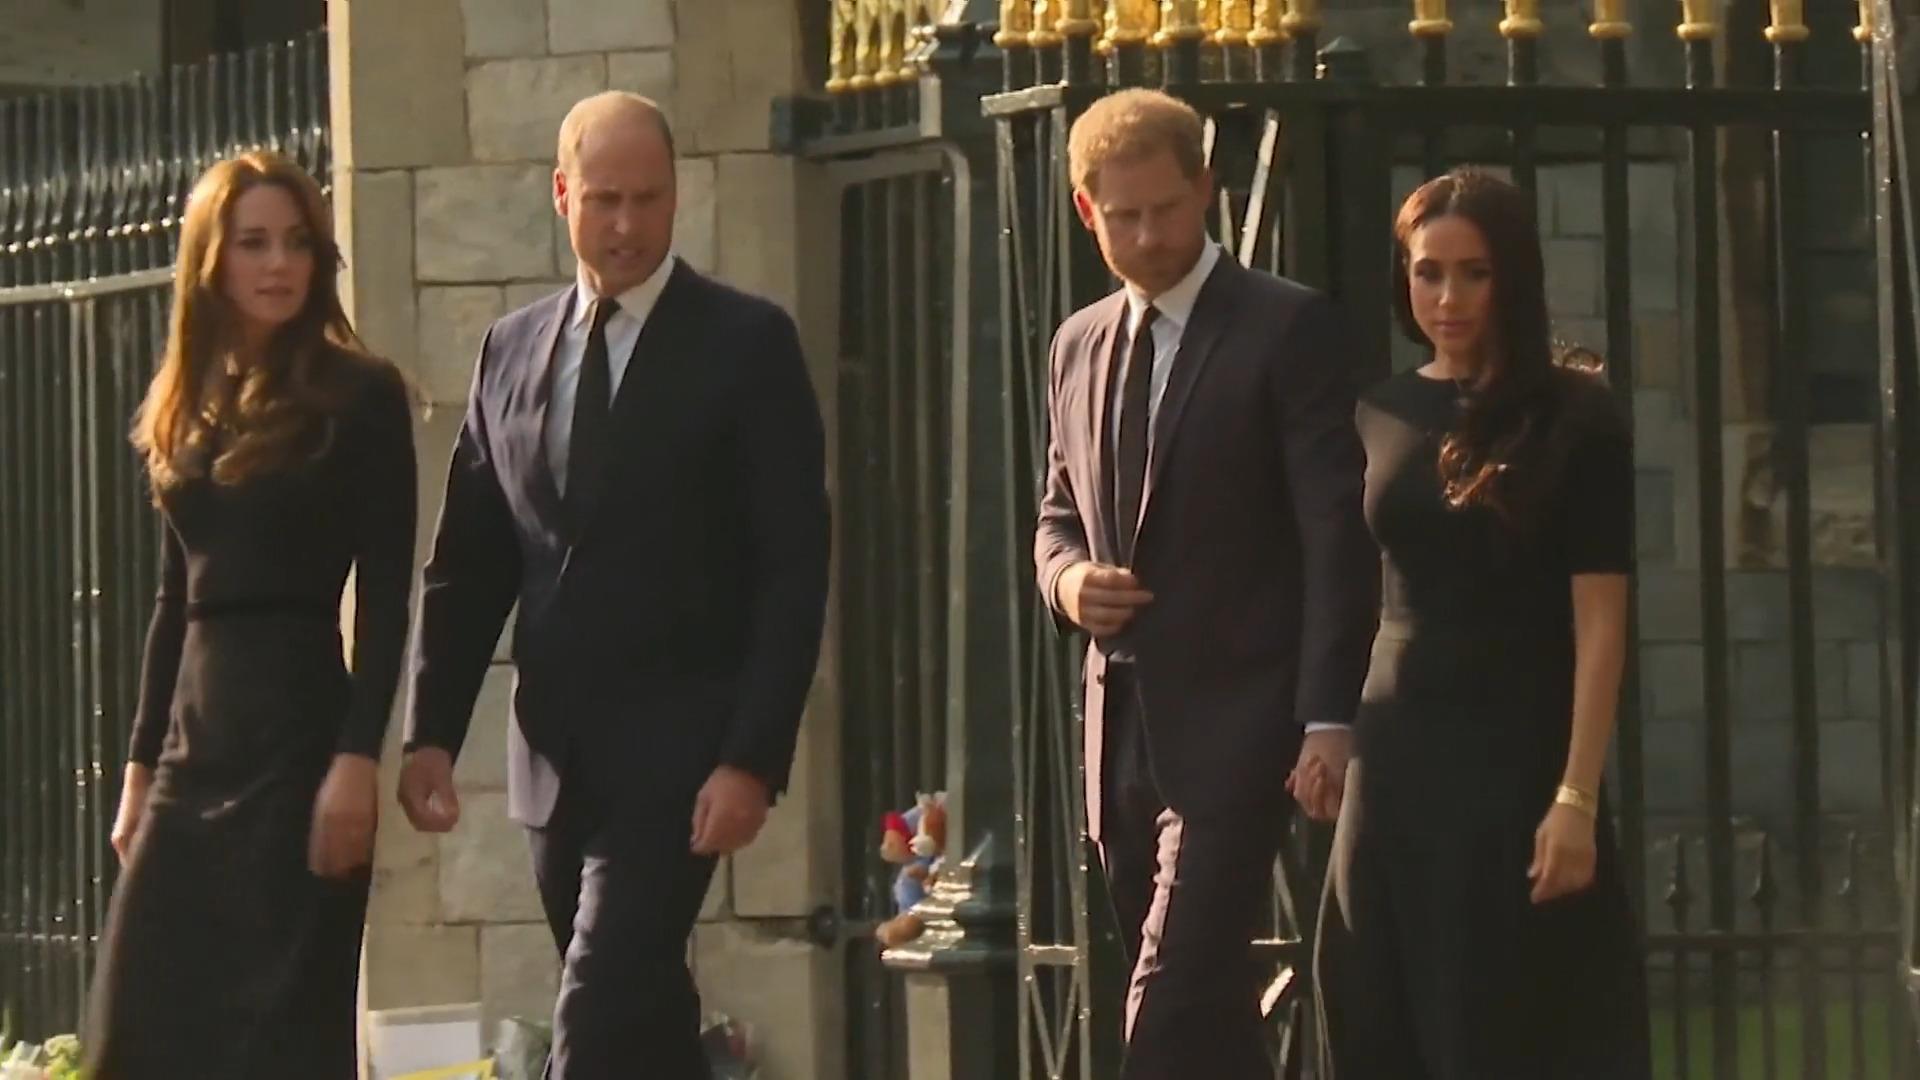 Il principe Harry festeggia il suo 38esimo compleanno a Pizza England con il principe William e la principessa Kate?